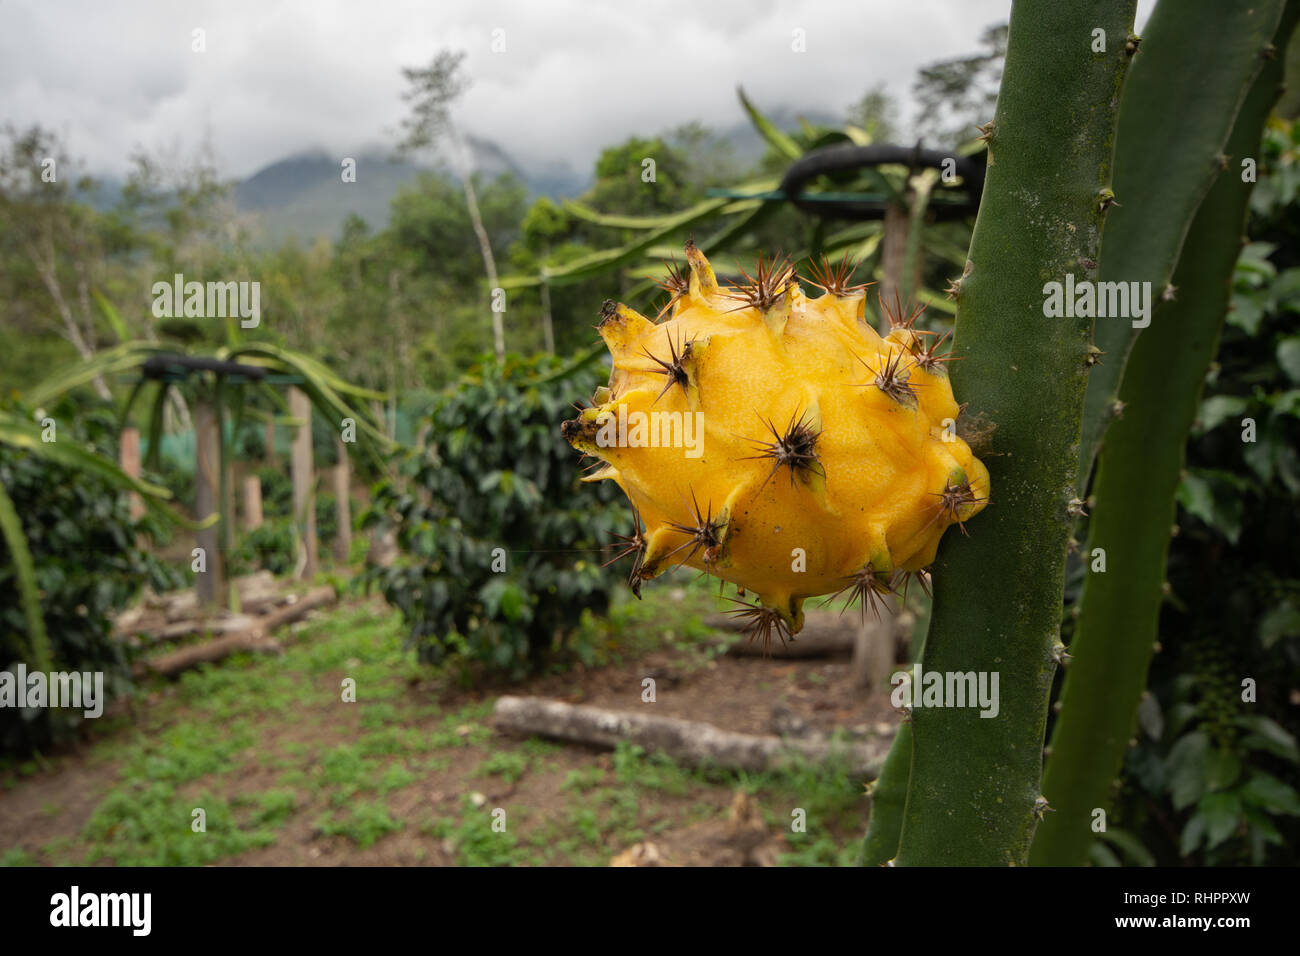 Un Fruit du dragon ou Pitaya jaune (Pitahaya) croissant sur Dragon Fruit Cactus entre caféiers dans une plantation tropicale au Pérou Banque D'Images